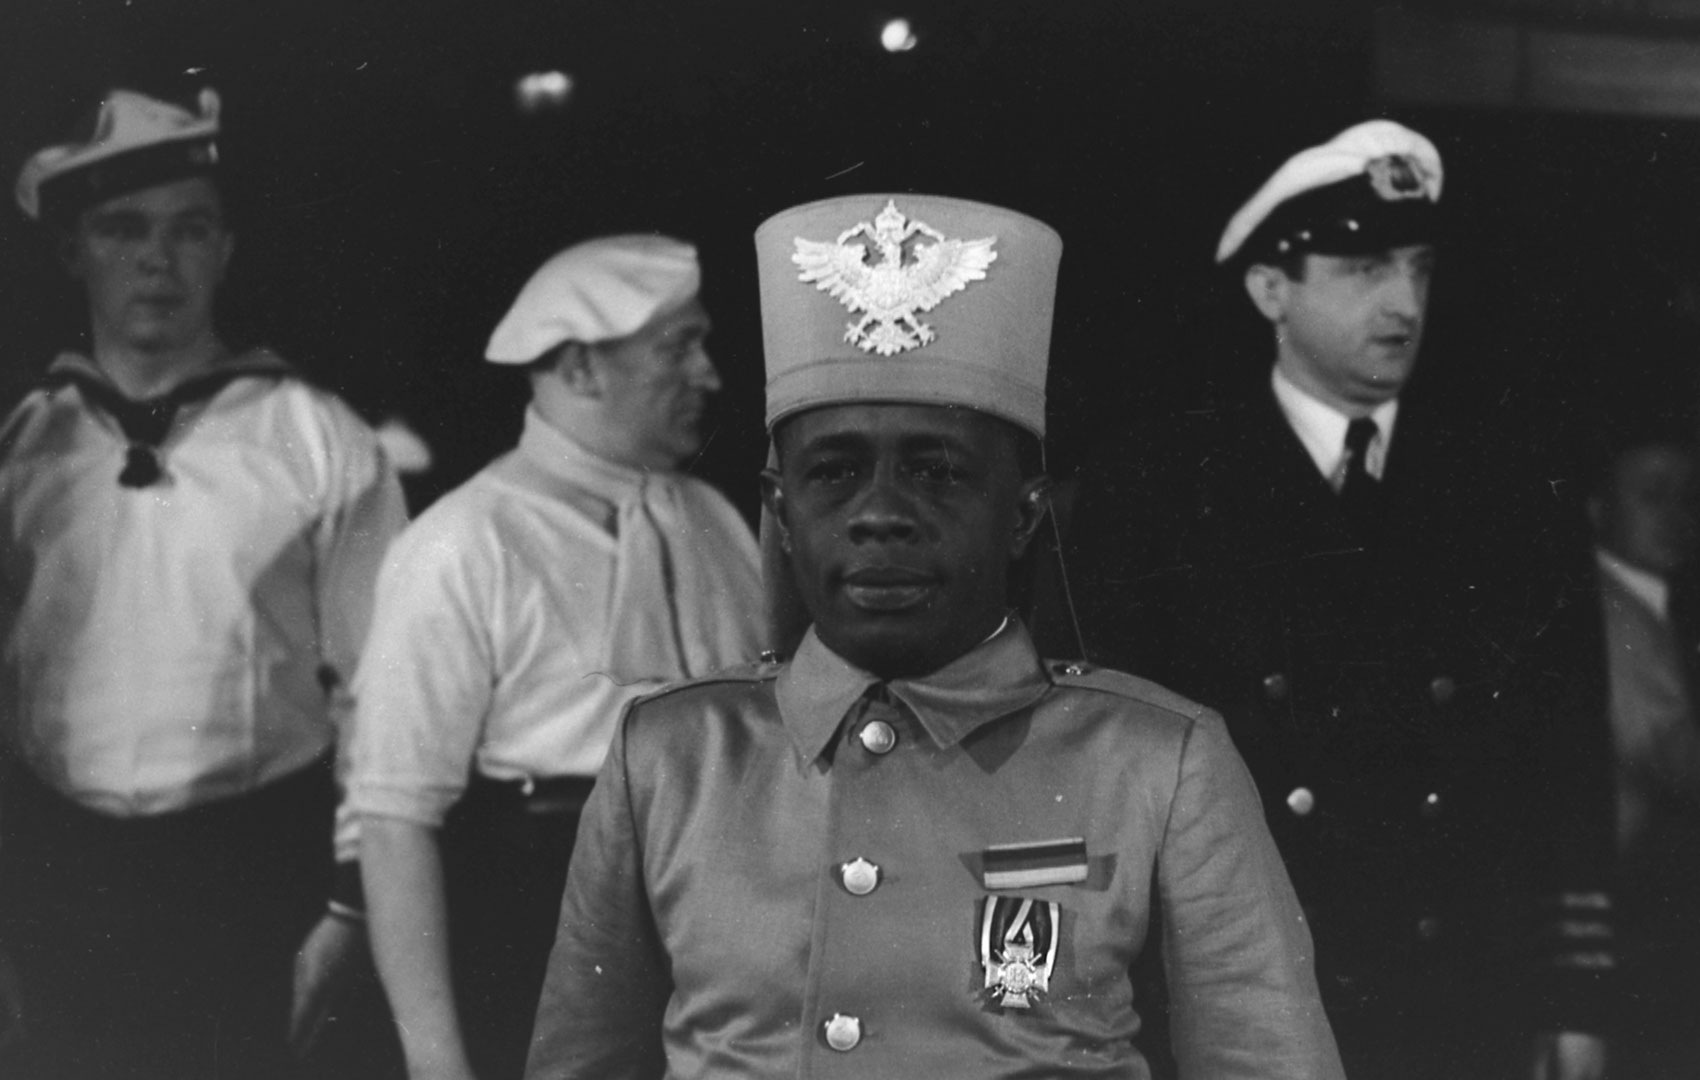 Schwarz-Weiß-Bild: Im Vordergrund sieht man einen Schwarzen Mann in Kriegsuniform, im Hintergrund zwei Weiße Matrosen und ein Kapitän.